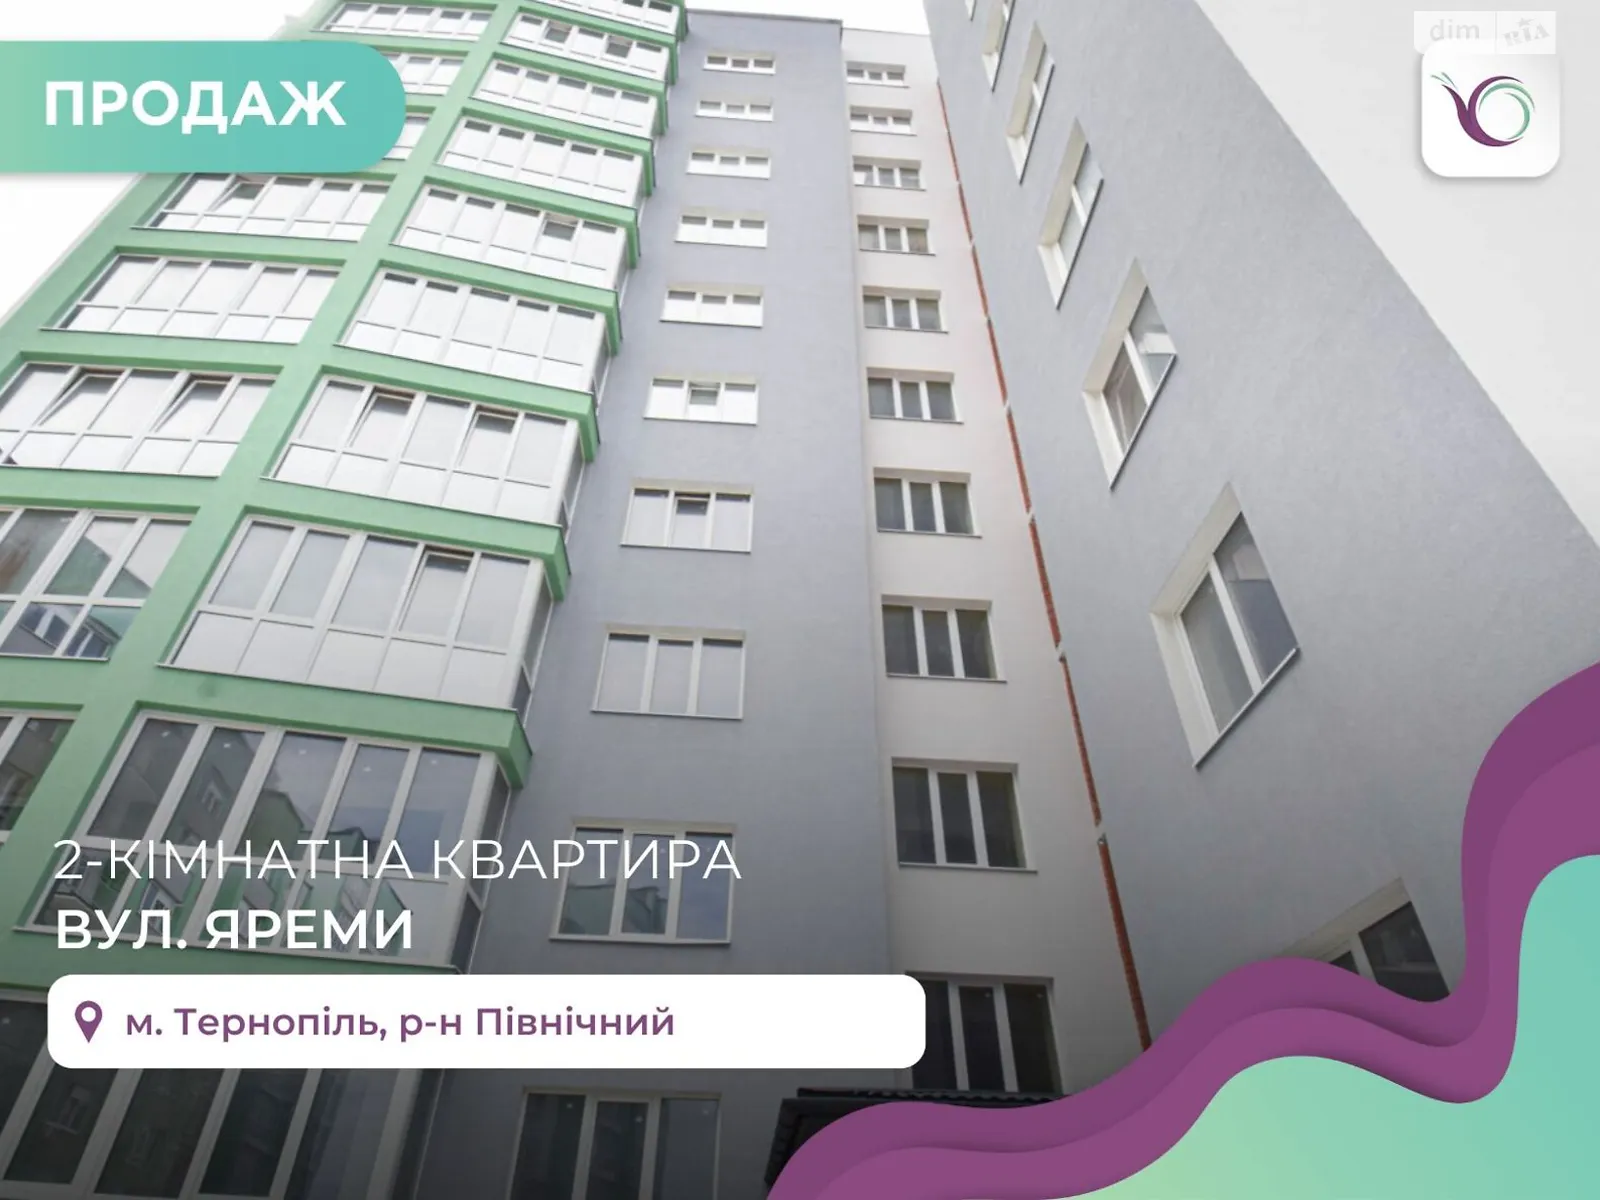 2-комнатная квартира 74.2 кв. м в Тернополе, ул. Яремы - фото 1